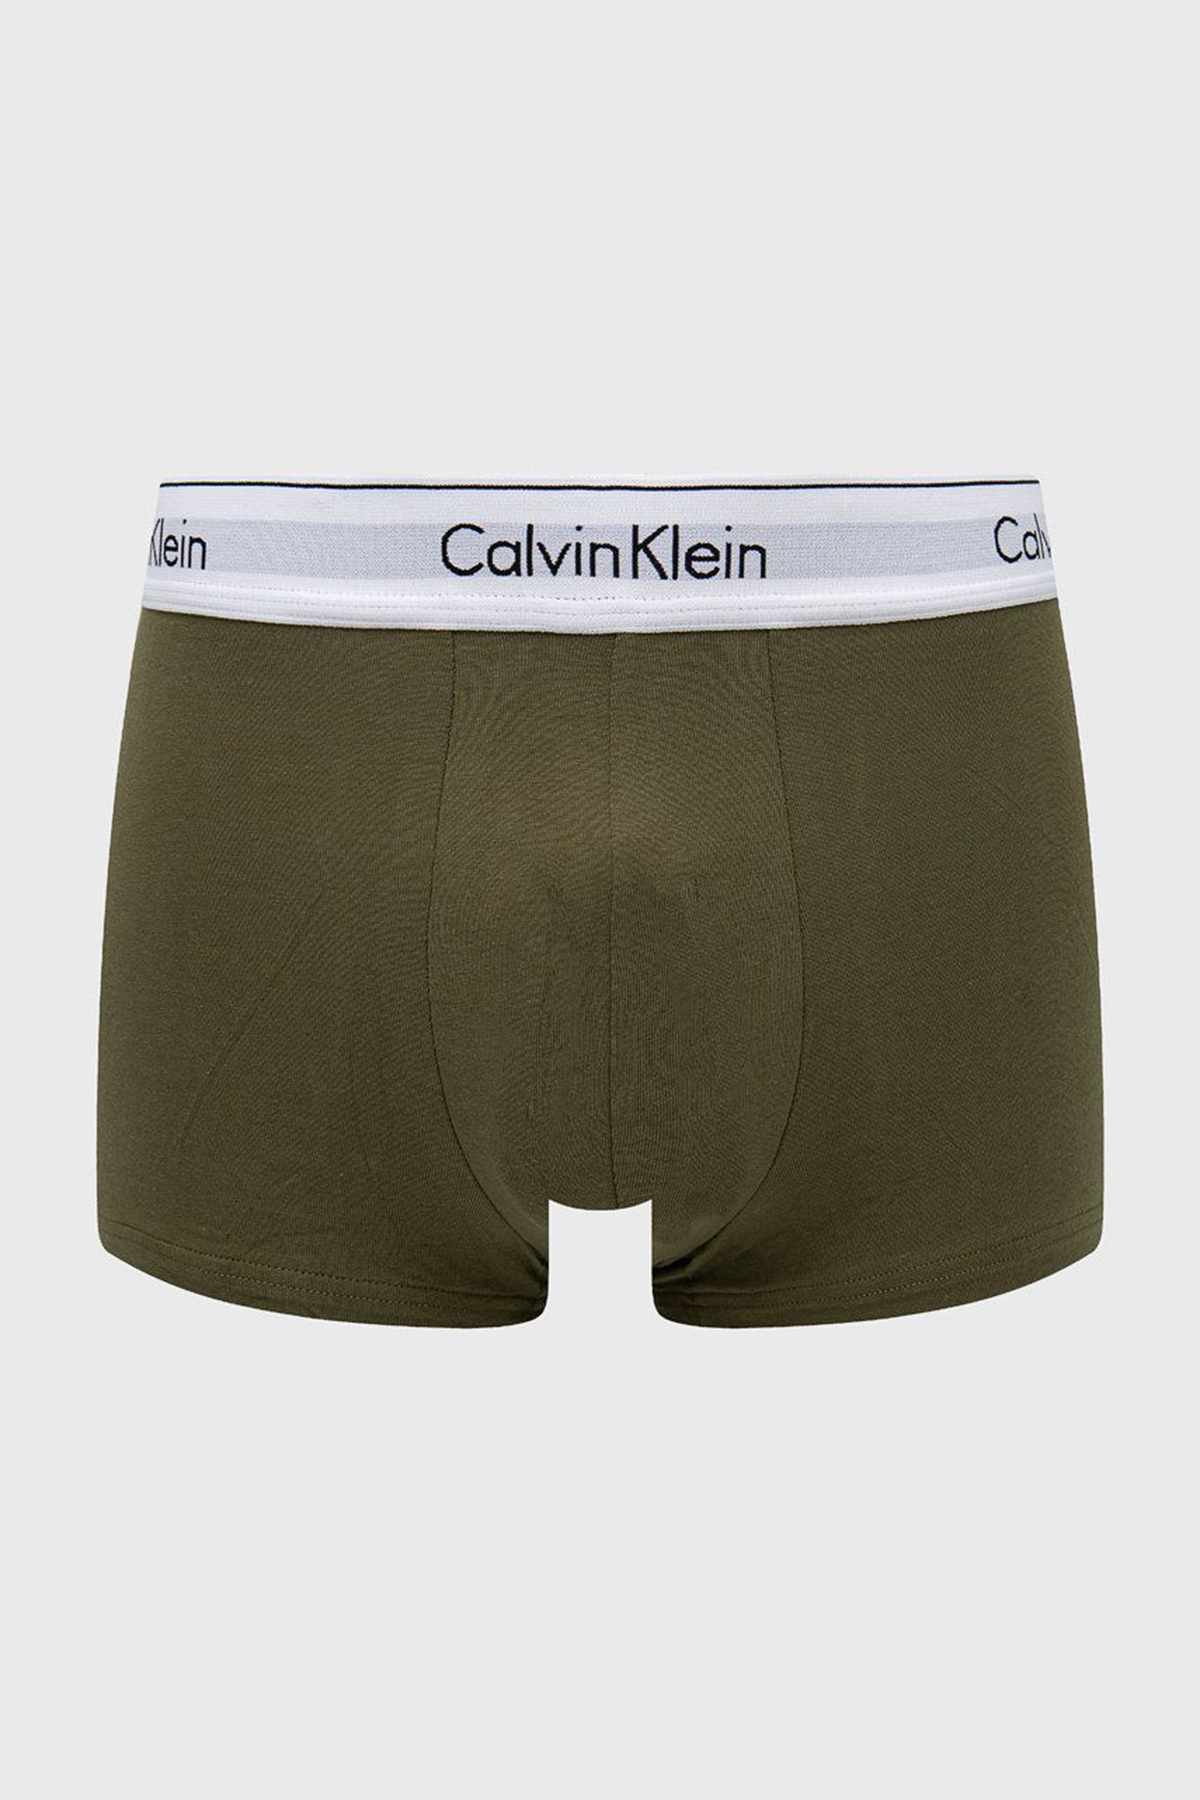 Men's Underwear Calvin Klein CALVIN KLEIN CK ONE COTTON TRUNK WHITE 2 PACK  S/M/L RRP £37 